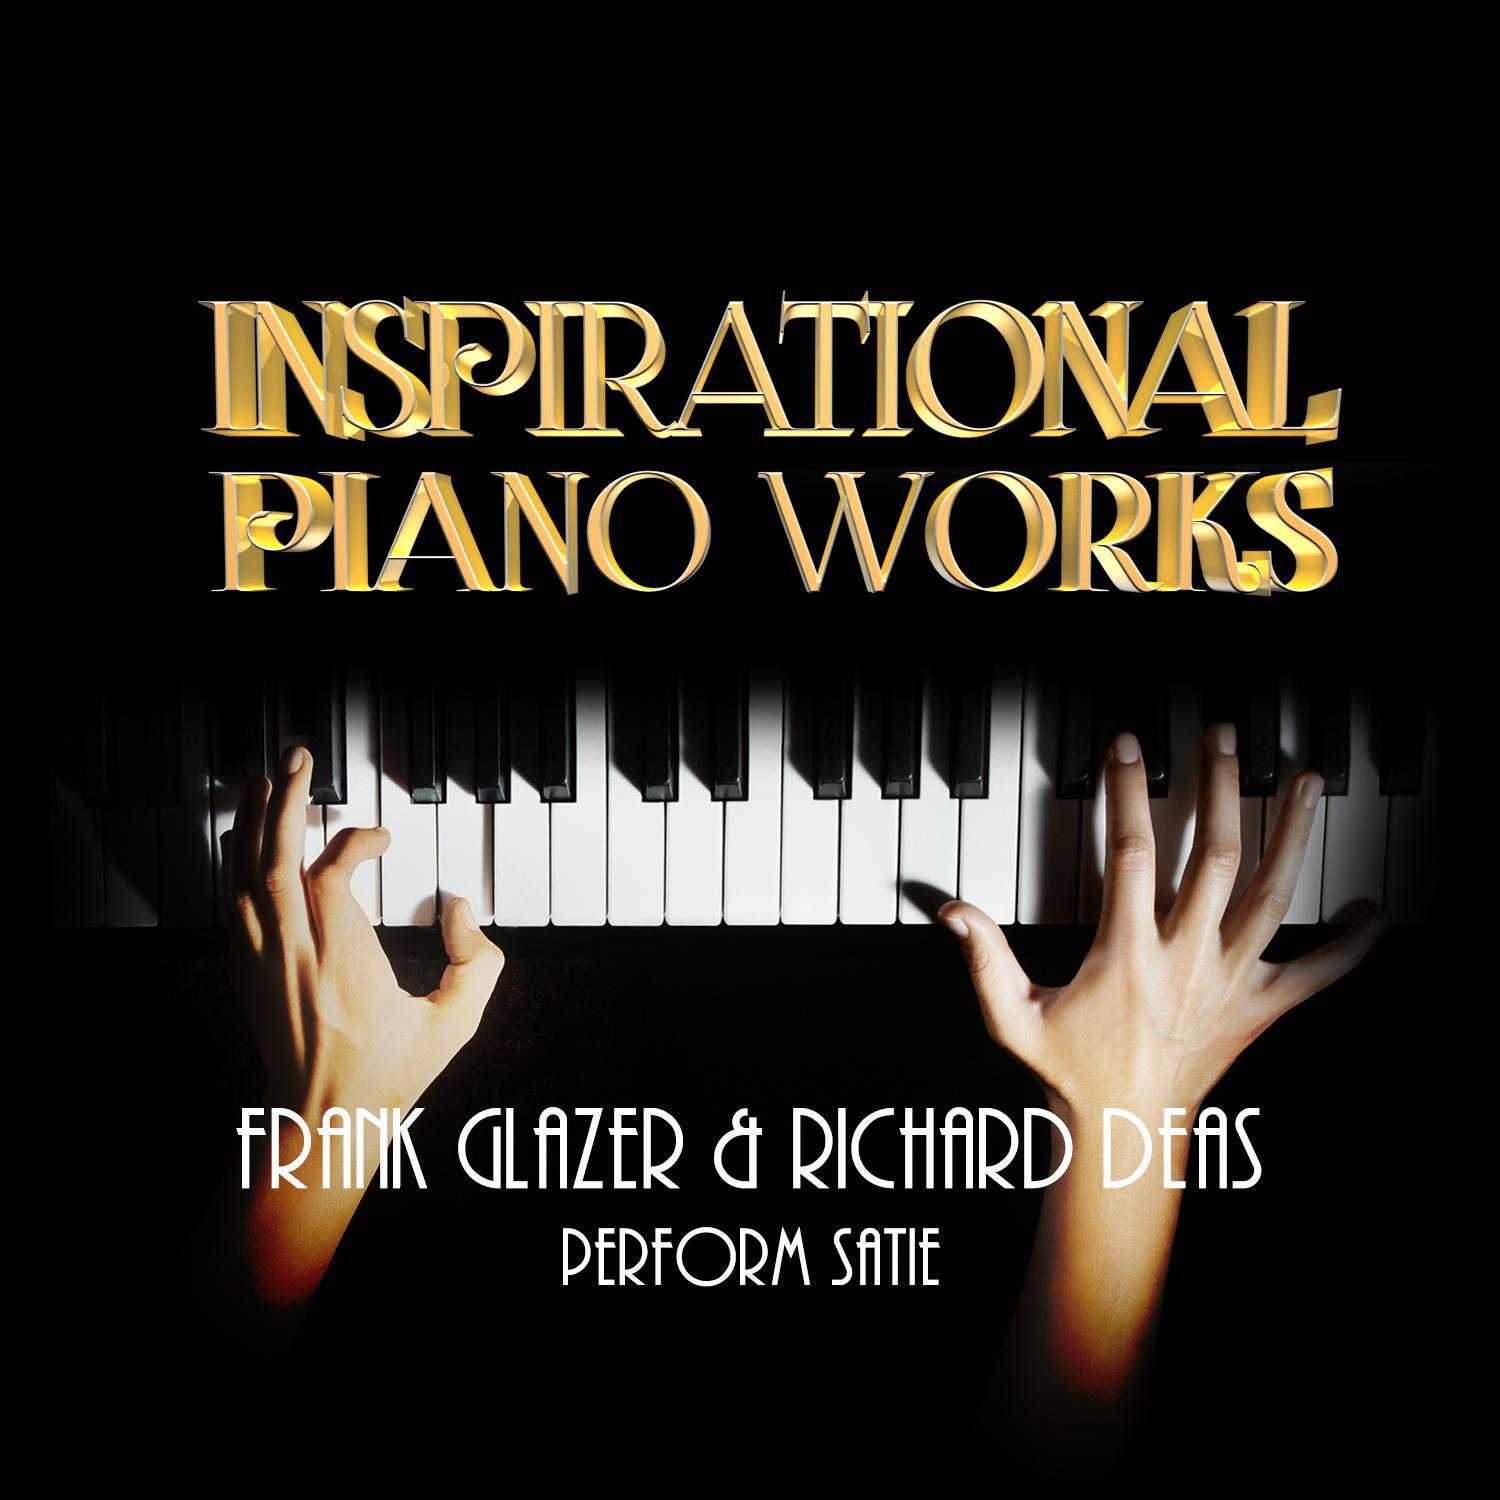 Inspirational Piano Works: Frank Glazer & Richard Deas Perform Satie专辑